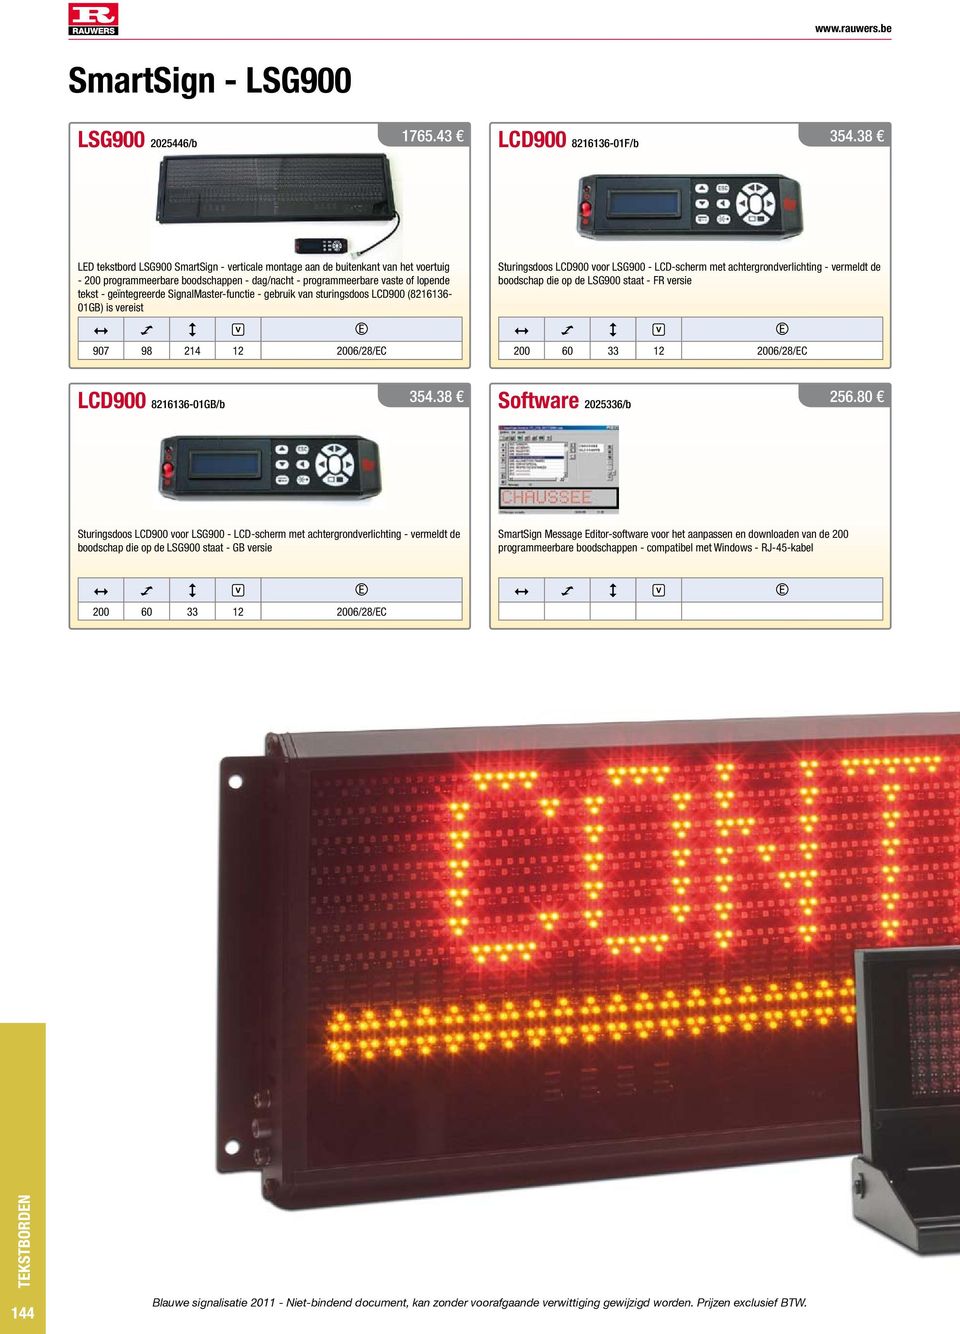 SignalMaster-functie - gebruik van sturingsdoos LCD900 (8216136-01GB) is vereist Sturingsdoos LCD900 voor LSG900 - LCD-scherm met achtergrondverlichting - vermeldt de boodschap die op de LSG900 staat